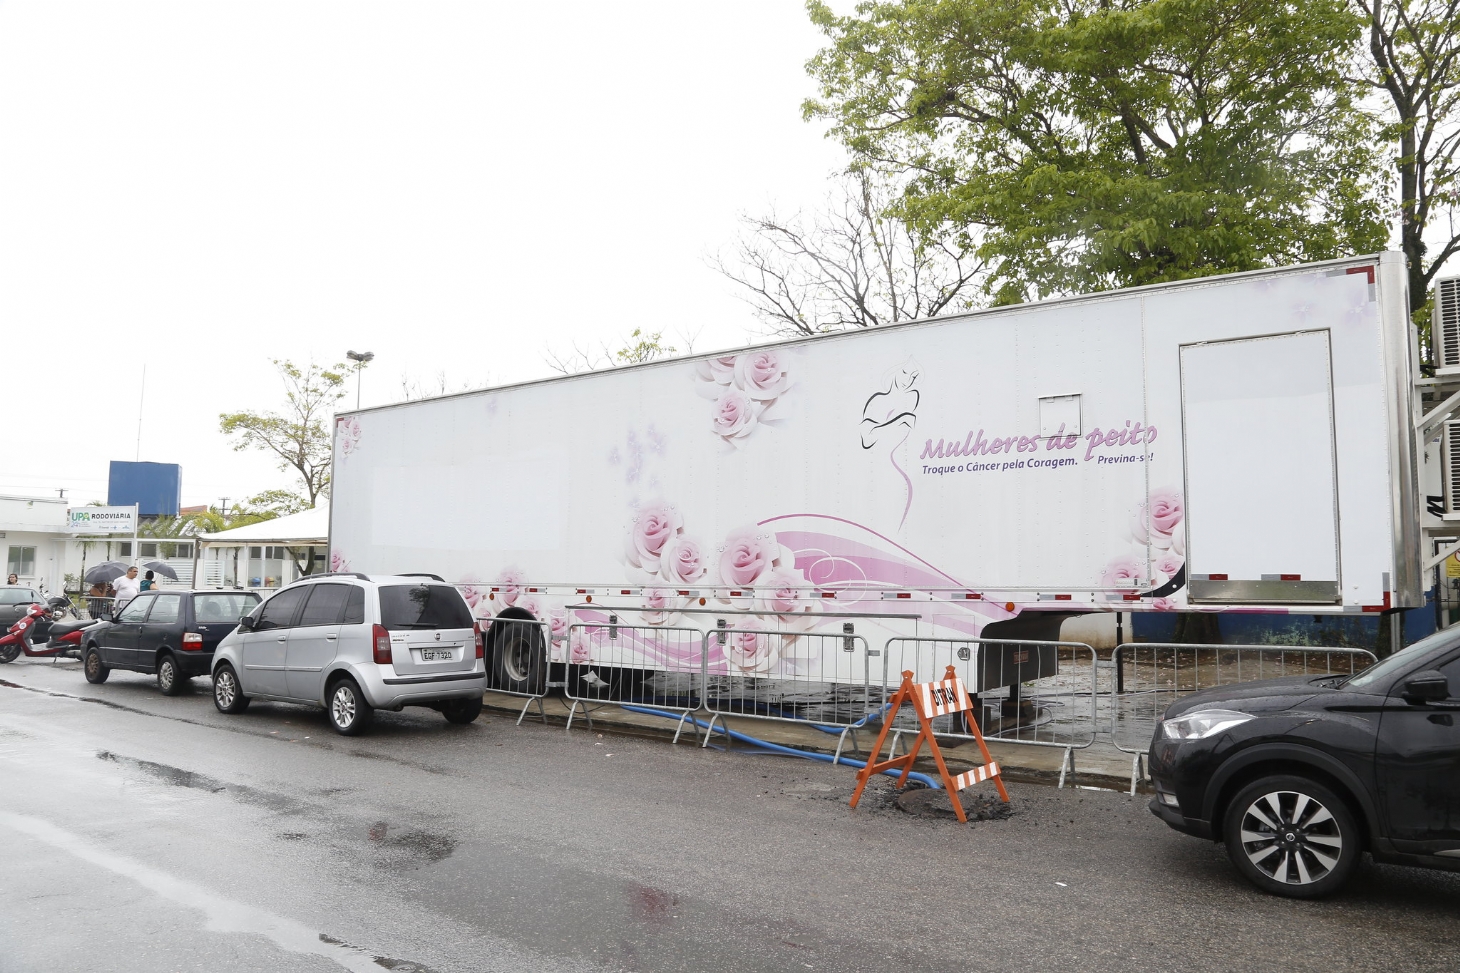 Carreta da Mamografia começa a atender em Guarujá a partir de terça-feira (7) | Jornal da Orla